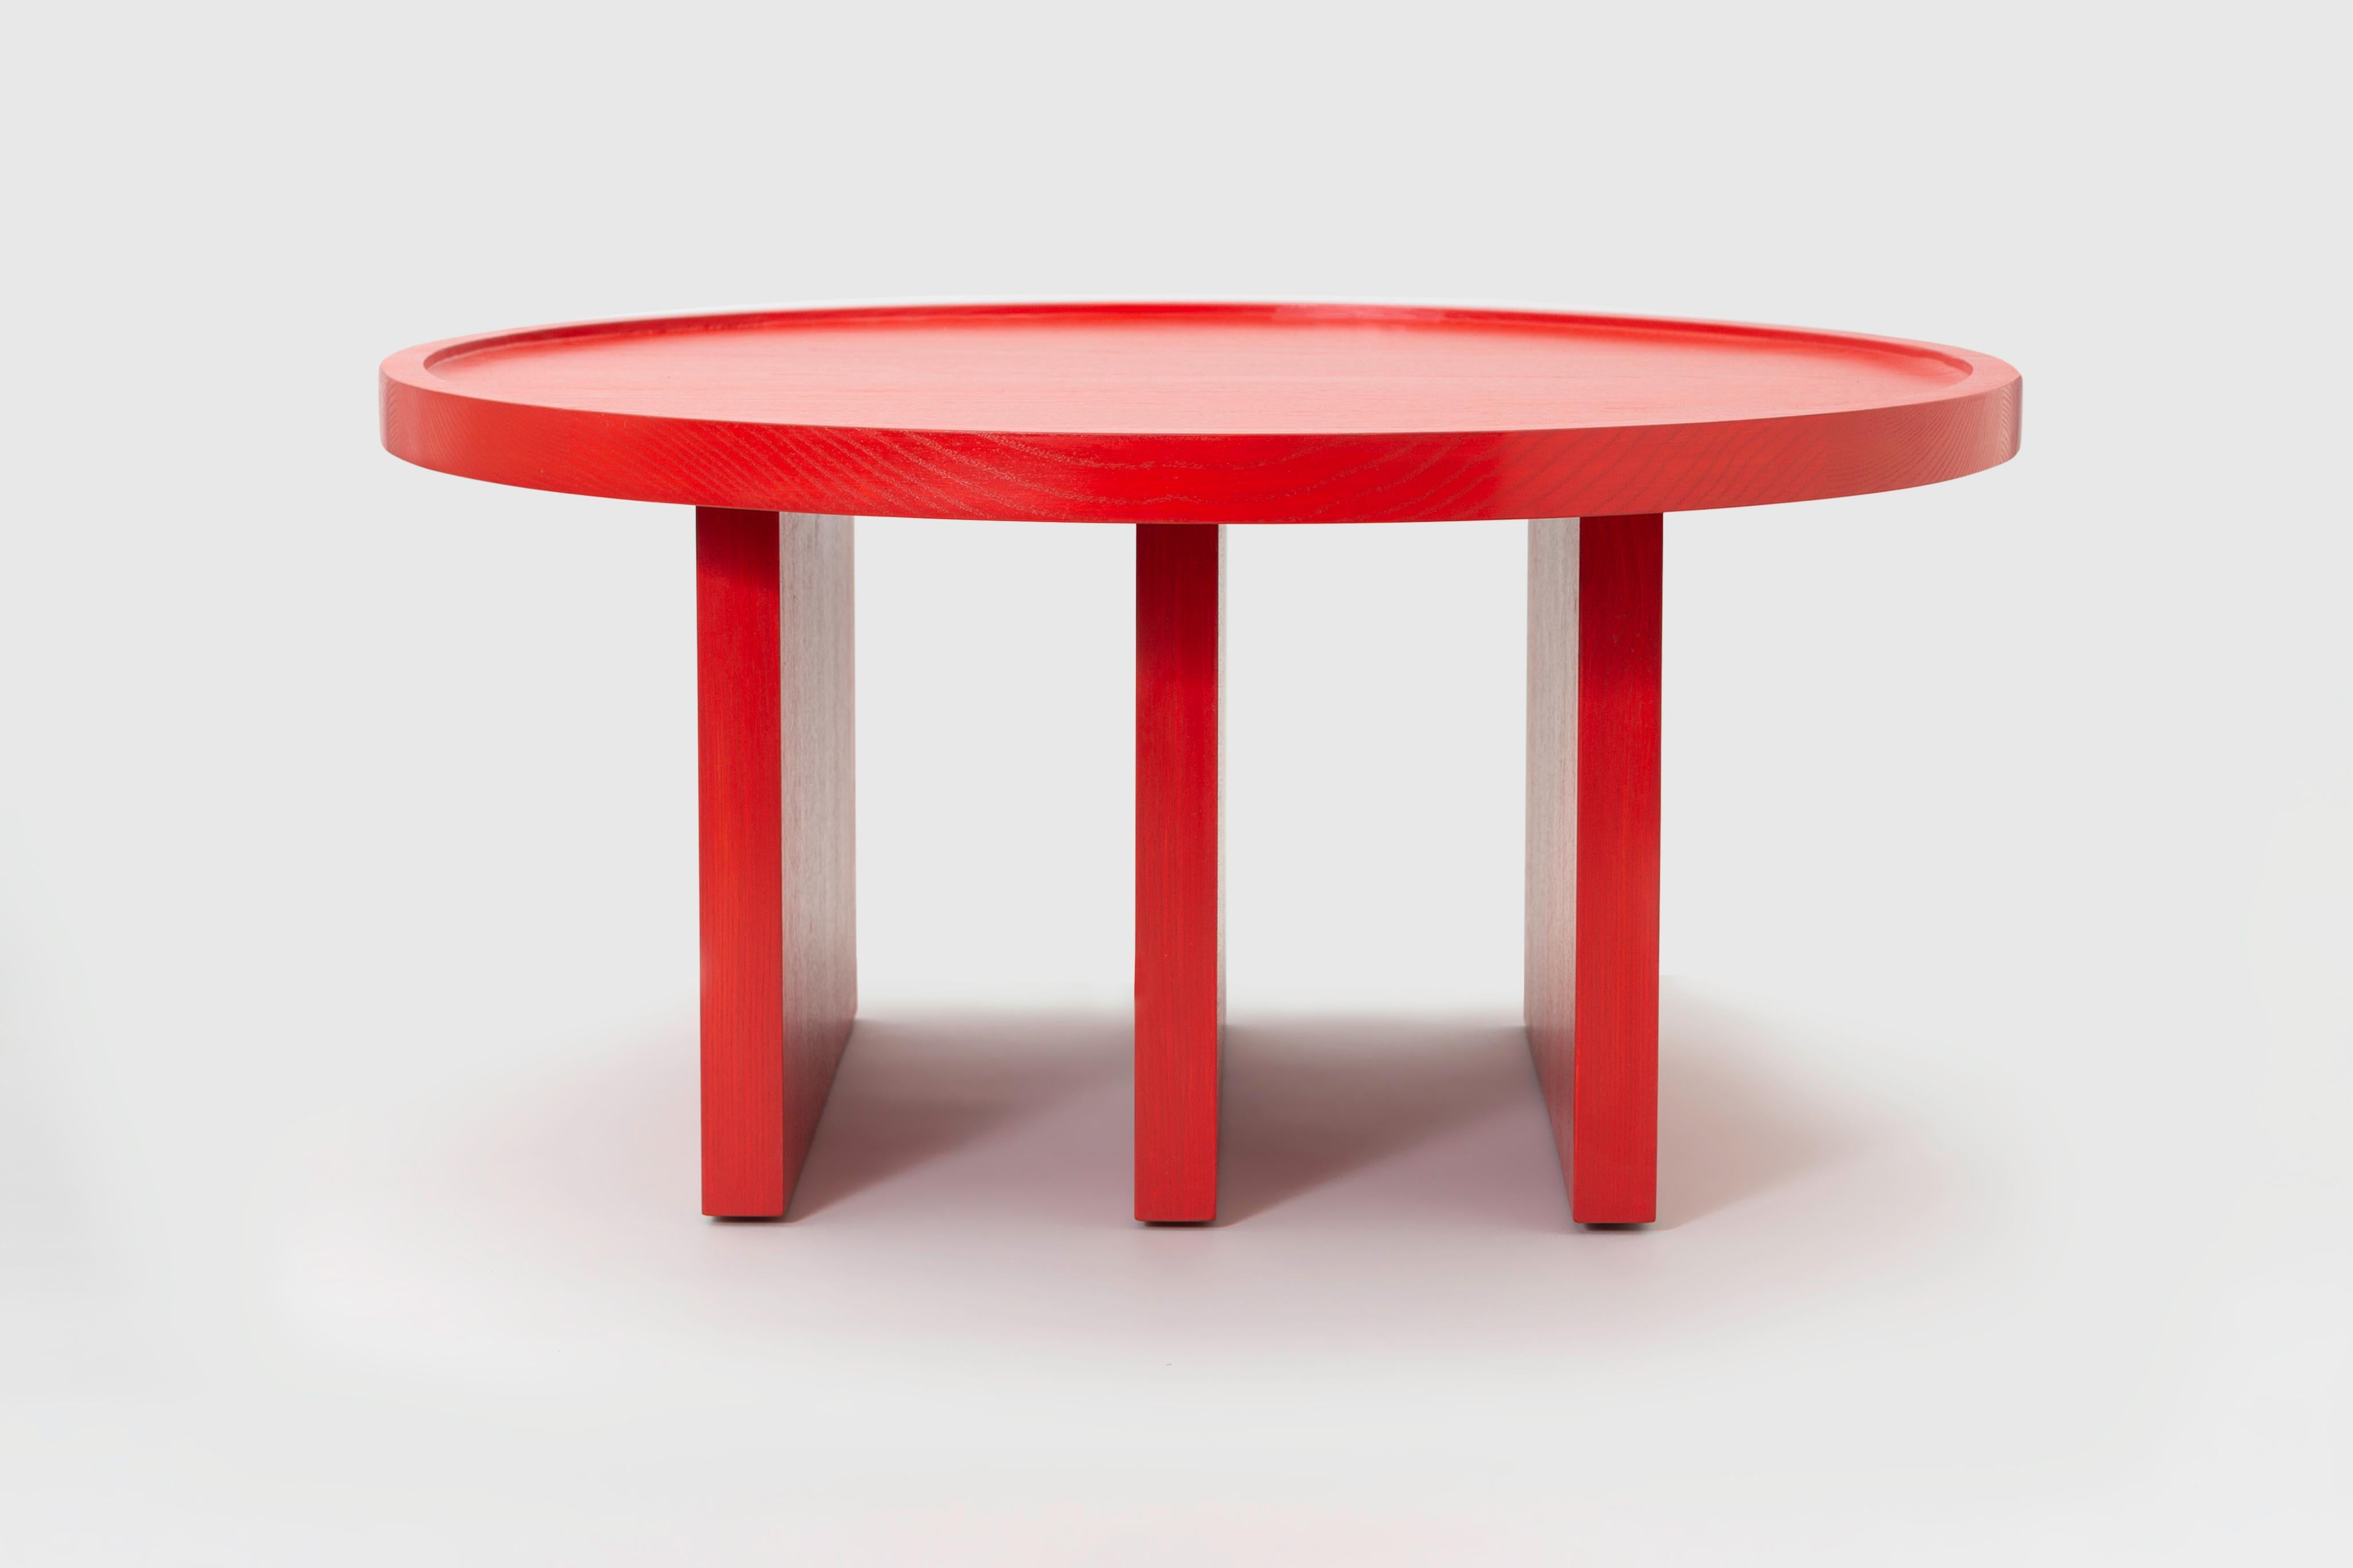 ODD ist ein minimalistischer Tisch, der vom Berliner Designer Lucas Faber entworfen wurde. Das unkonventionelle Stück verweist gleichermaßen auf kühne architektonische Strukturen und grafische Muster. Die einfachen Geometrien, die die Beine und die